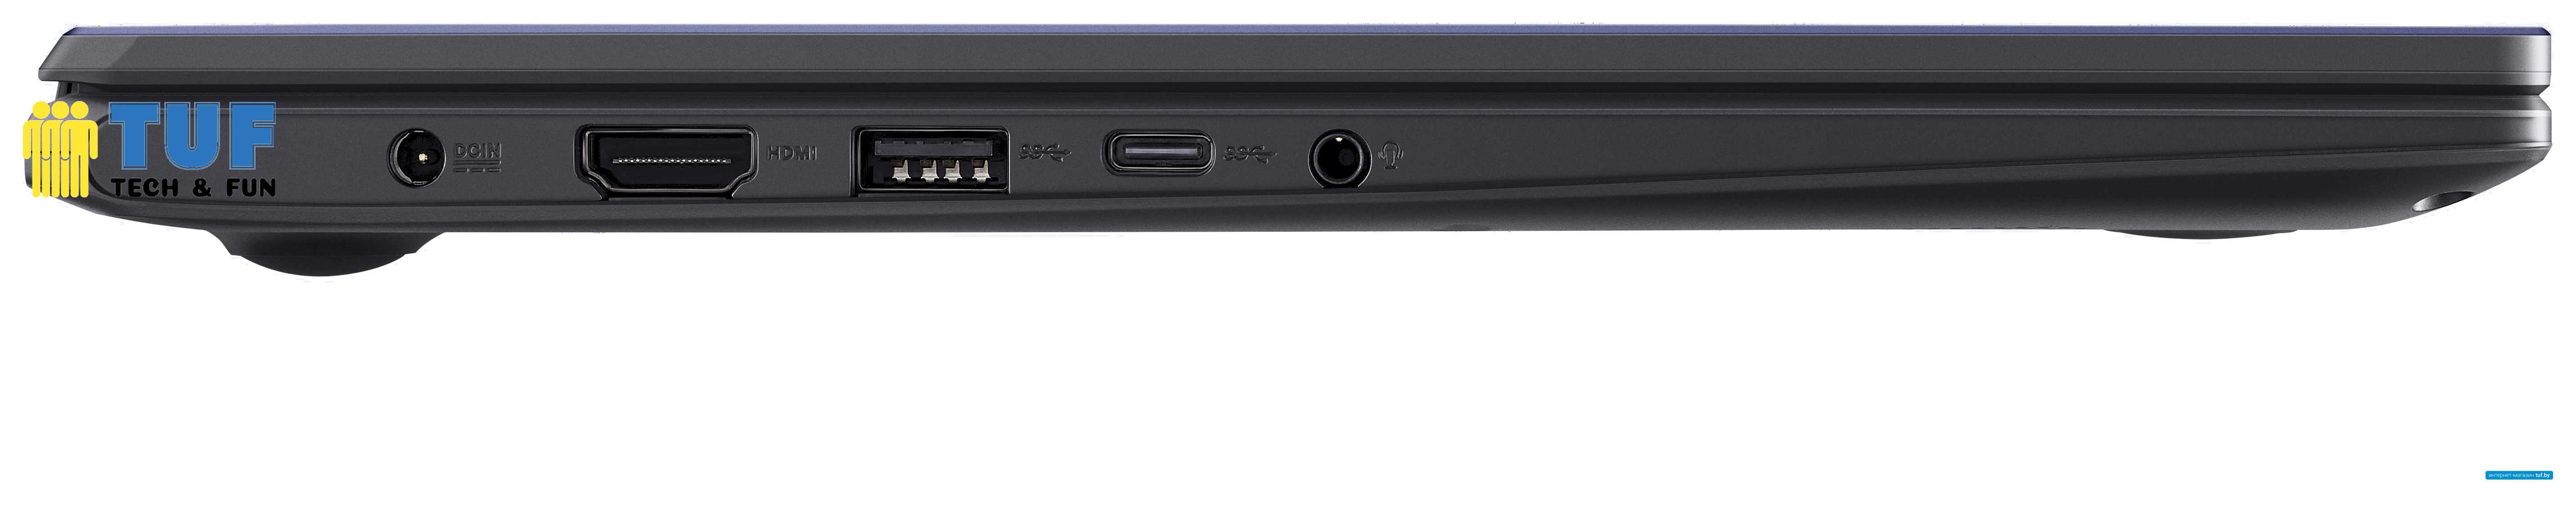 Ноутбук ASUS VivoBook E410KA-EB165T